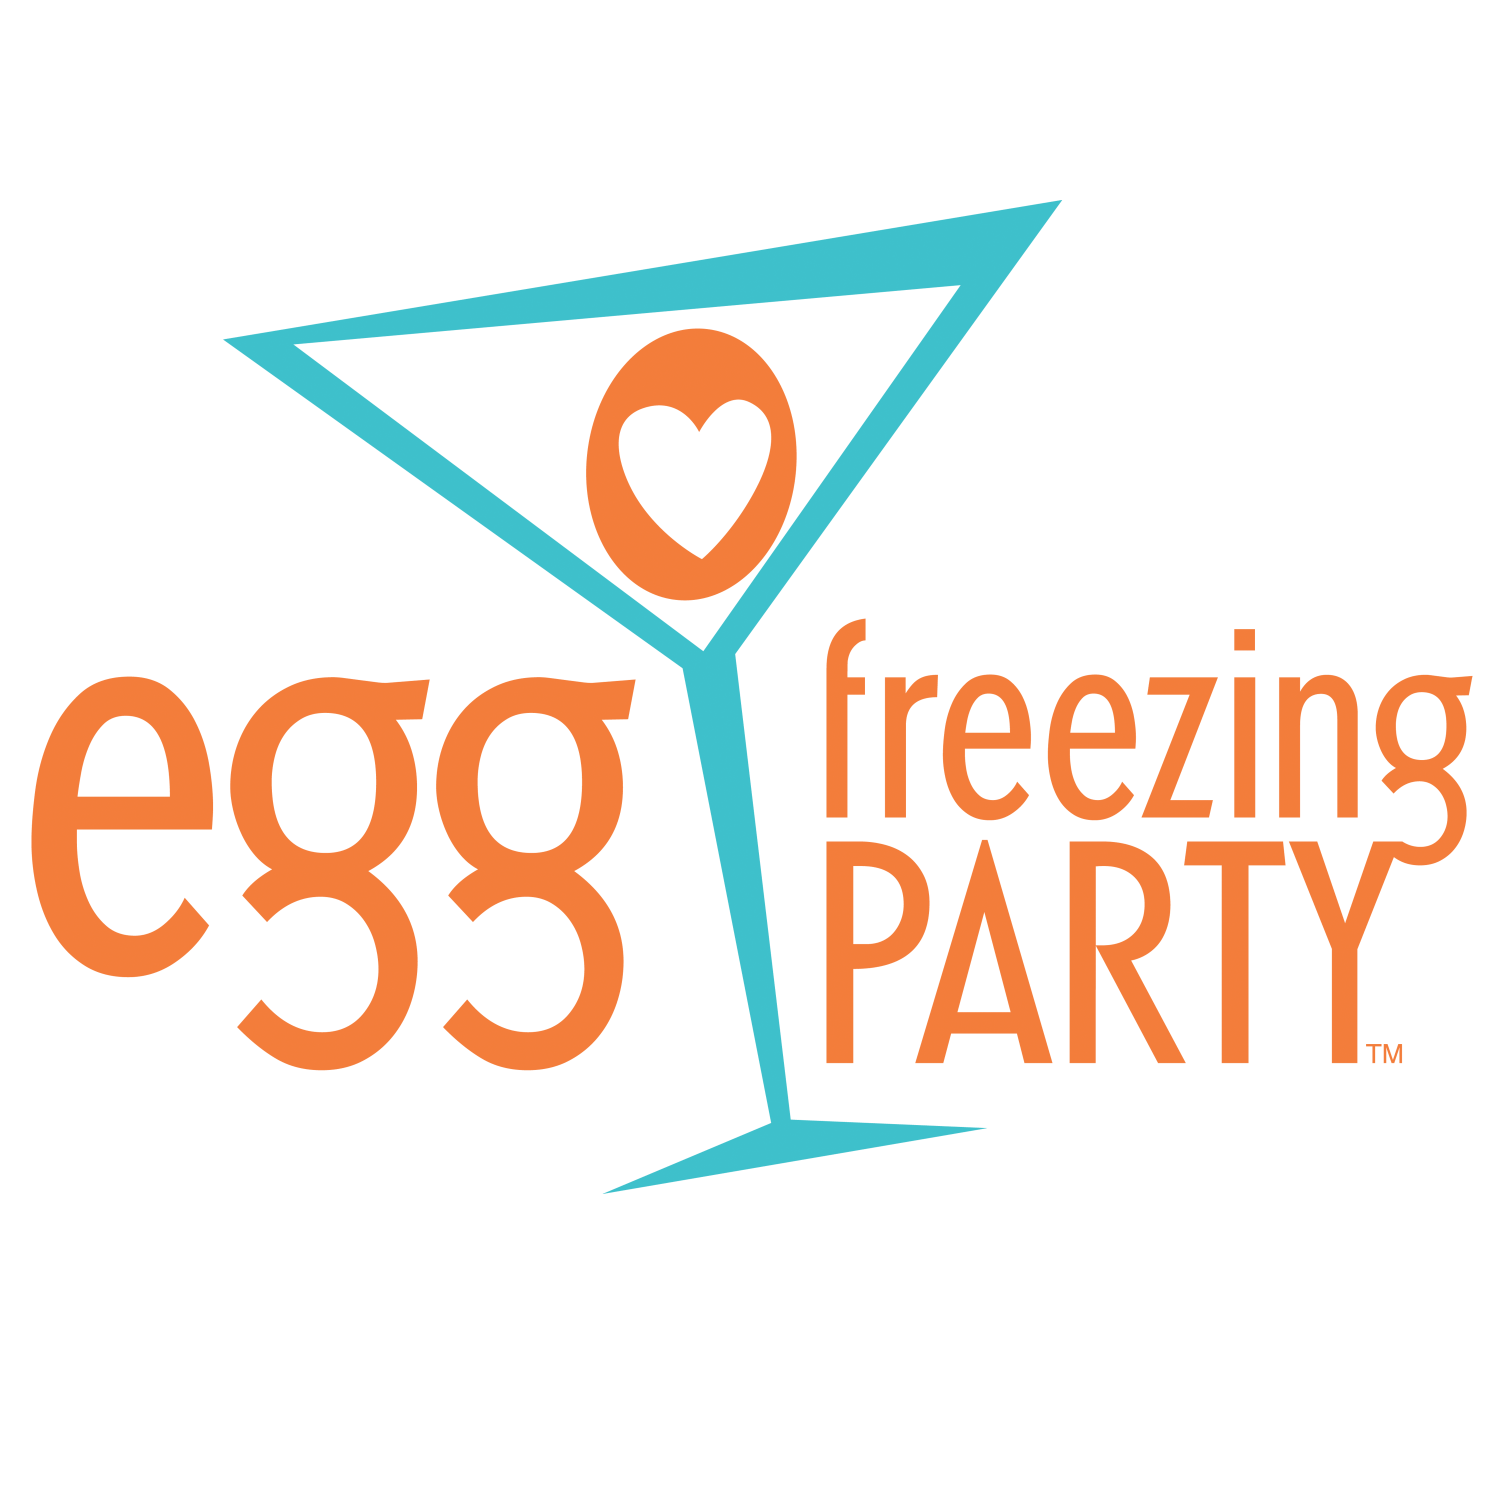 EggFreezingParty